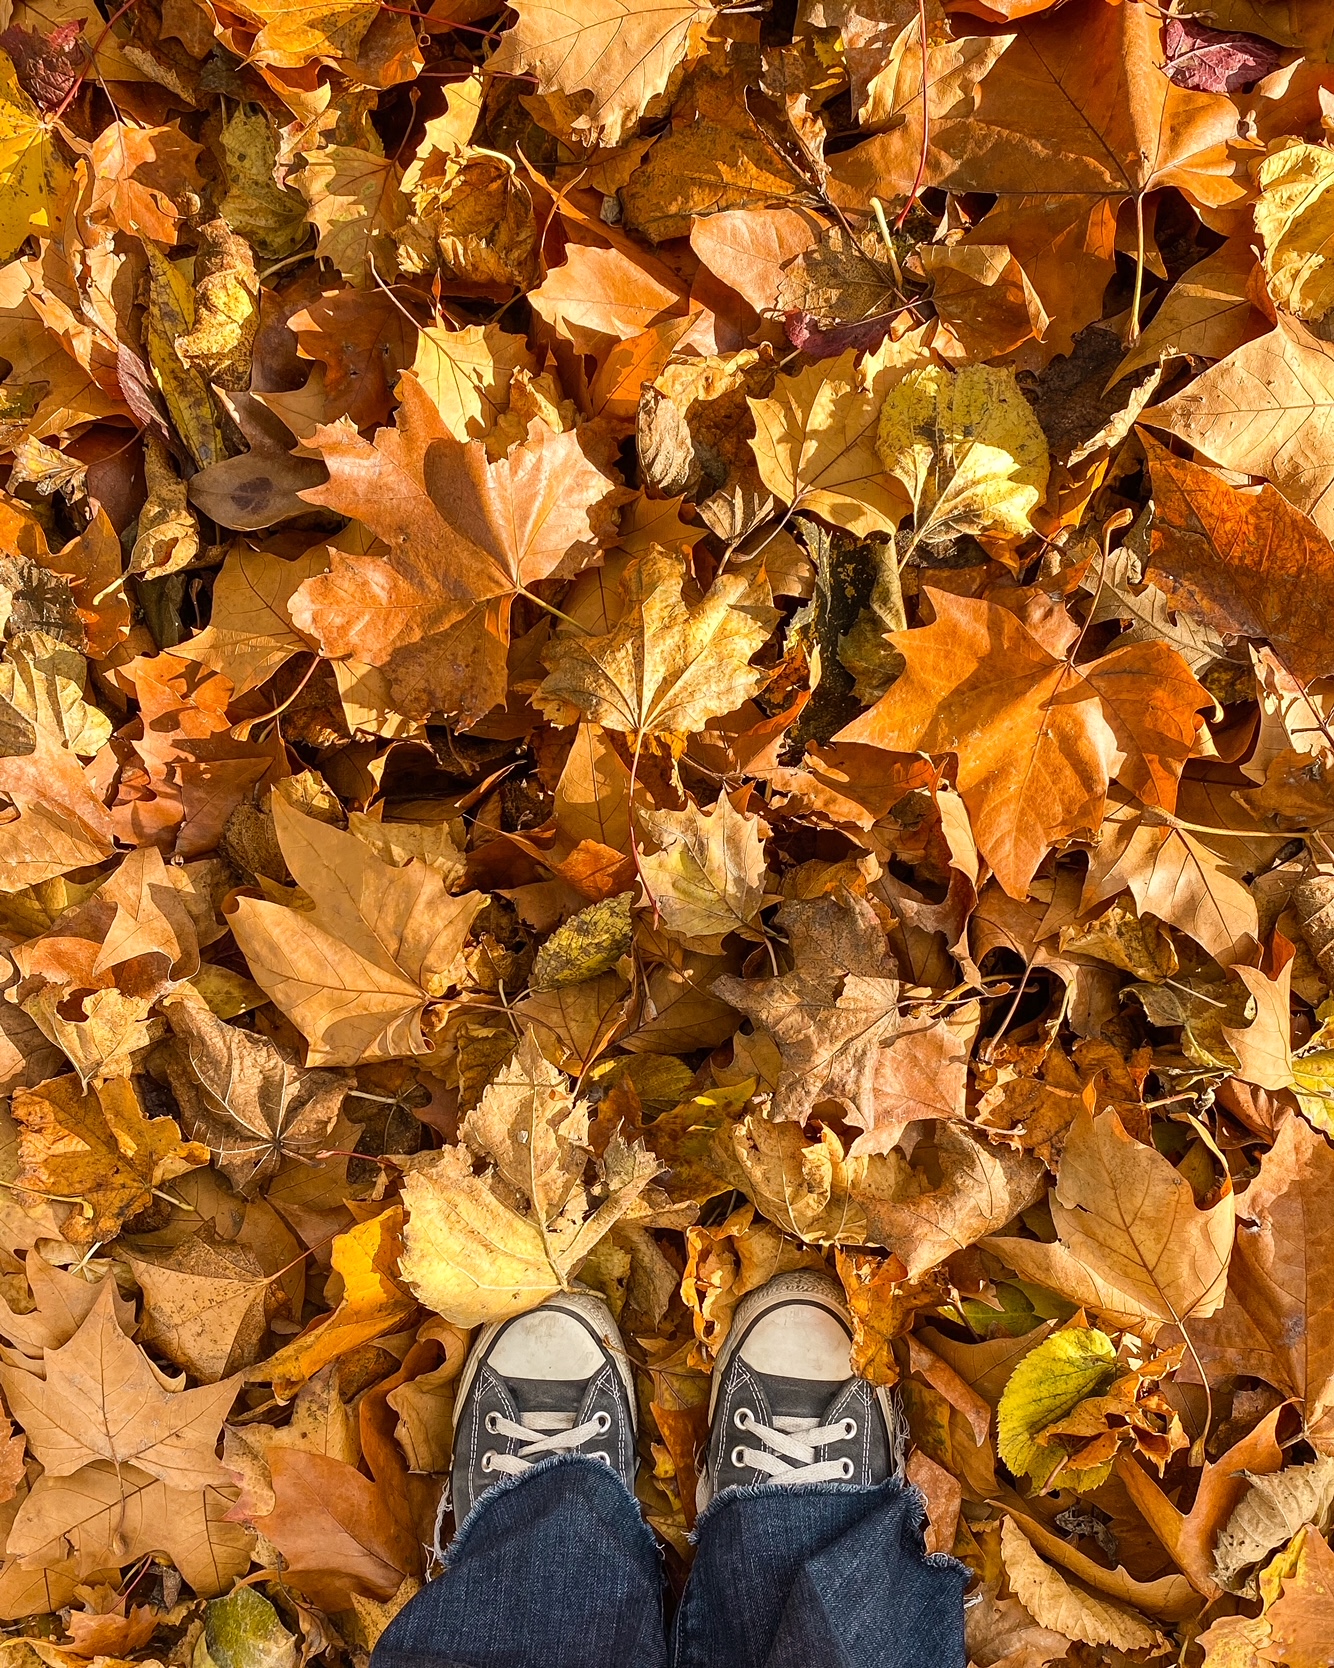 Vue d'en haut, pieds chaussés de Converse sur un tapis de feuilles